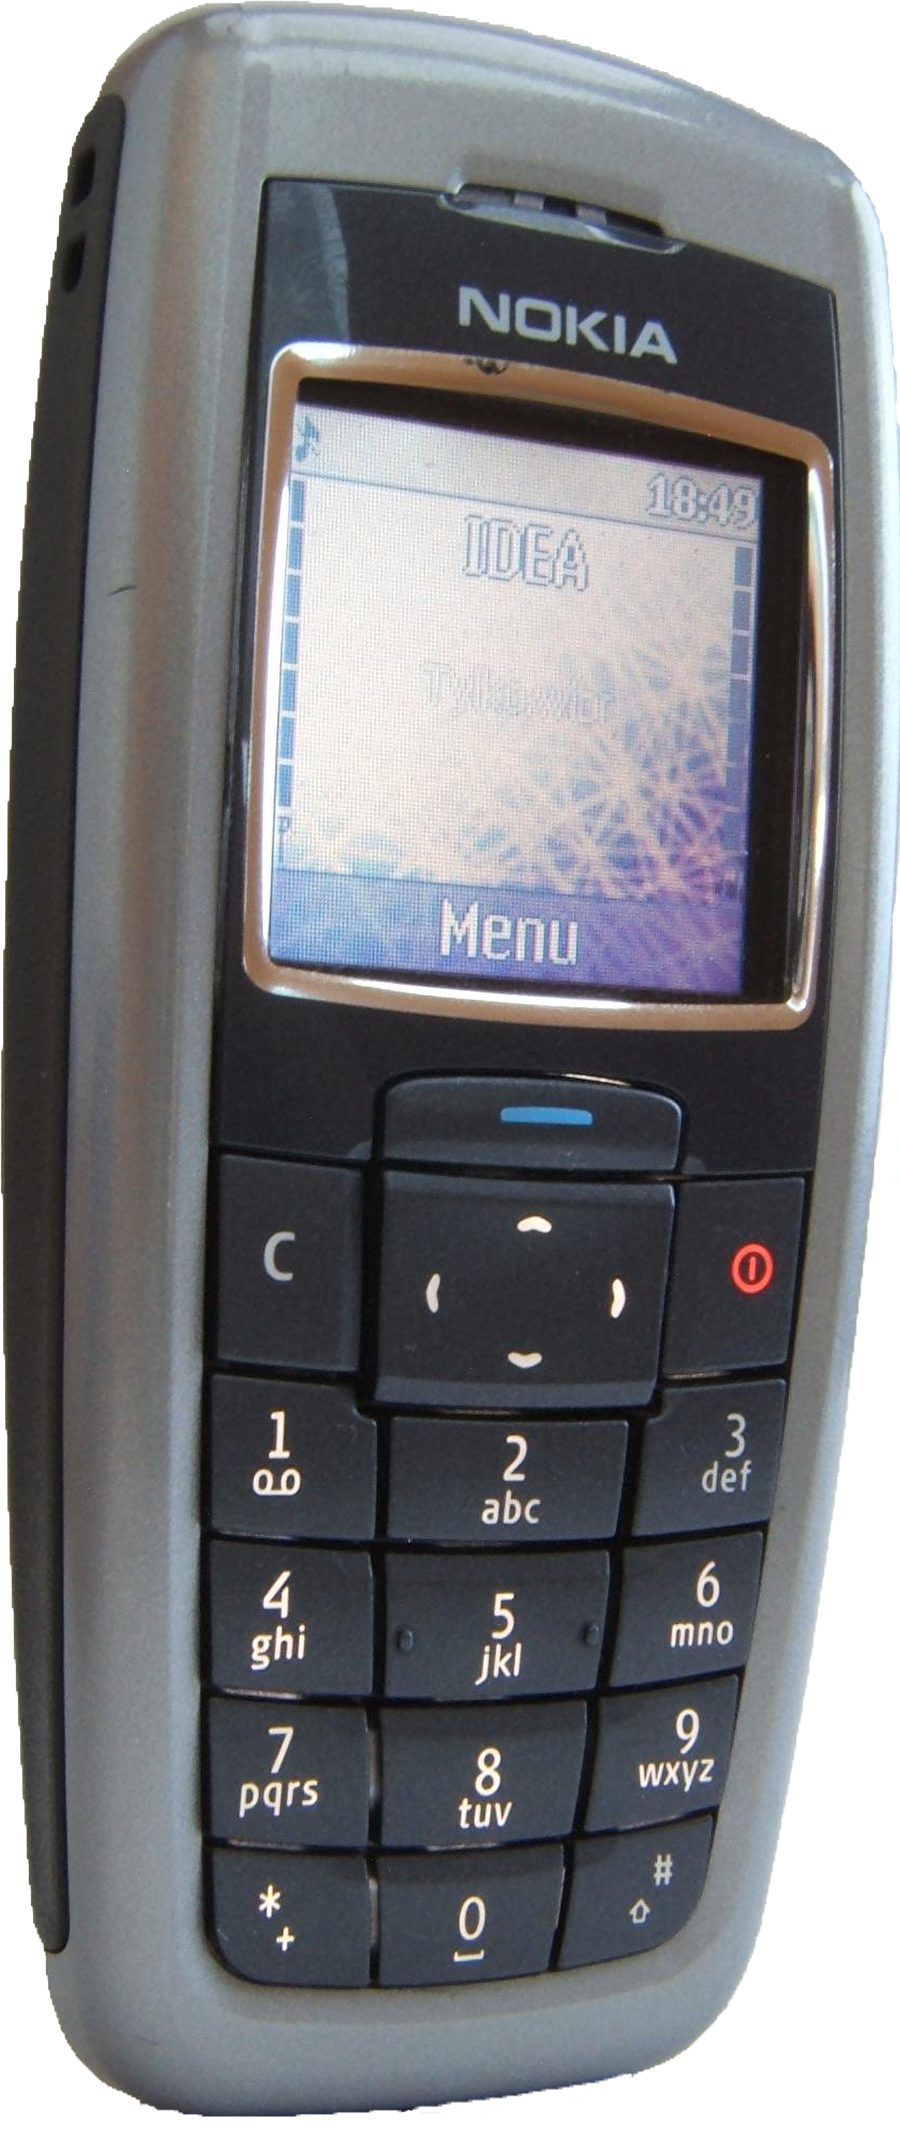 Nokia 2600

                                    
                                    Nokia 2600, 2004 yılında çıktı ve 135 milyon sattı. Polifonik müzik miydi neydi o?
                                
                                